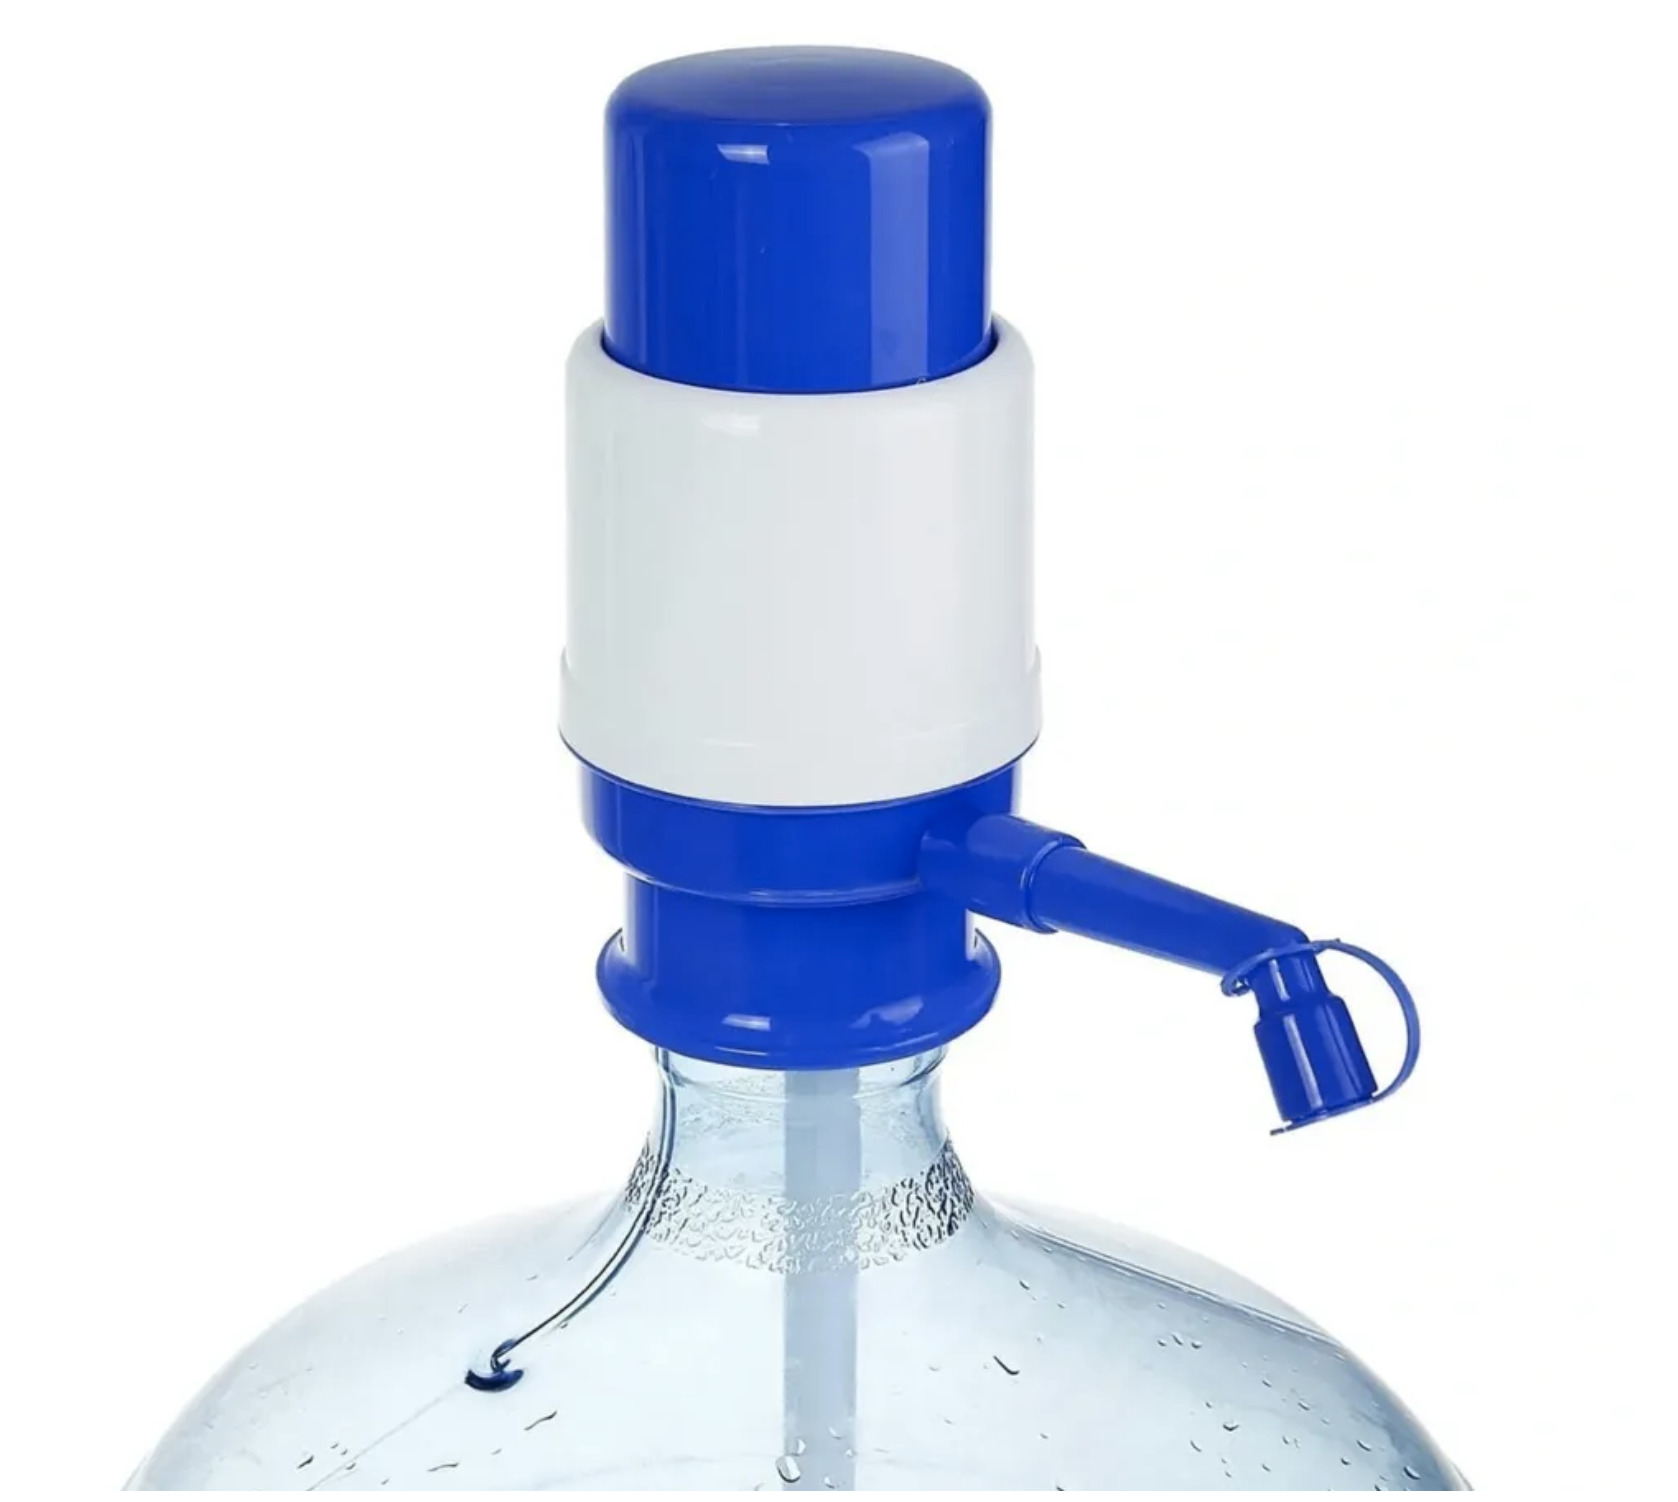 Помпа для воды озон. Помпа механическая Lesoto Mini. Механическая помпа для воды на 19 л бутыль. Помпа AEL 080. Помпа механическая Ecotronic Optima PM-8081.